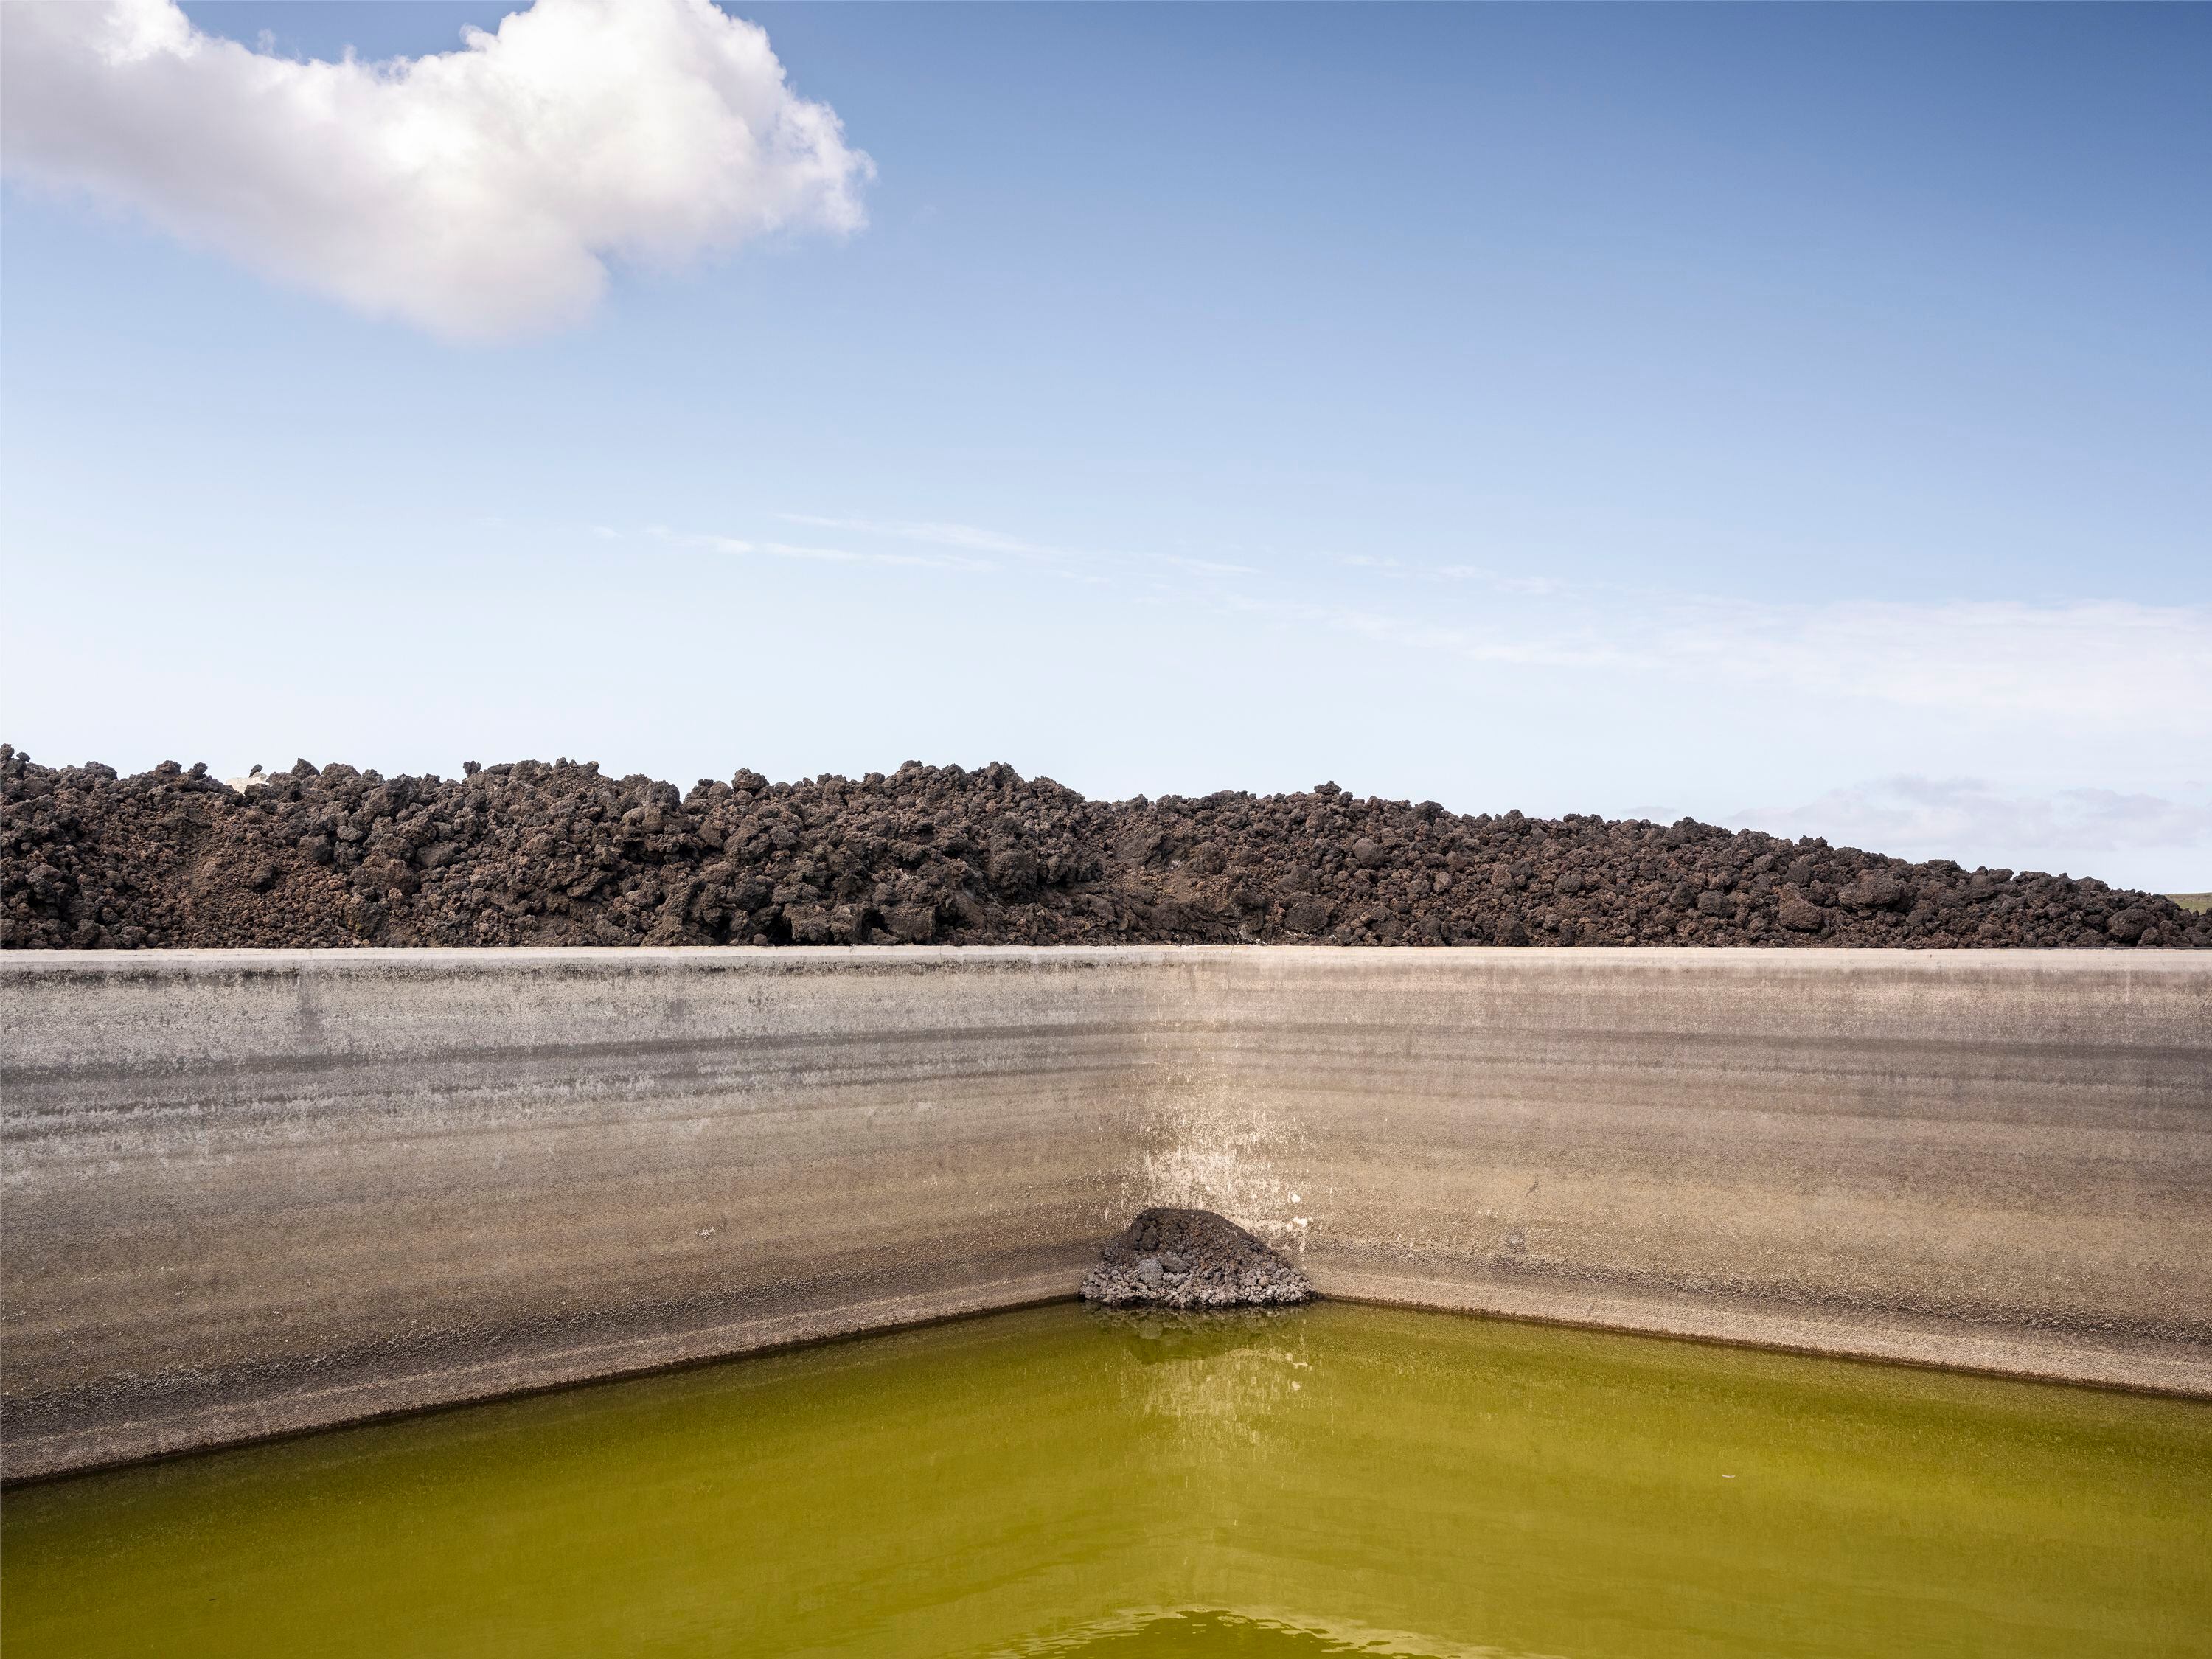 Abril de 2022. Depósito de agua en Los Llanos de Aridane, dedicado a los cultivos, donde llegó la colada hasta el límite.